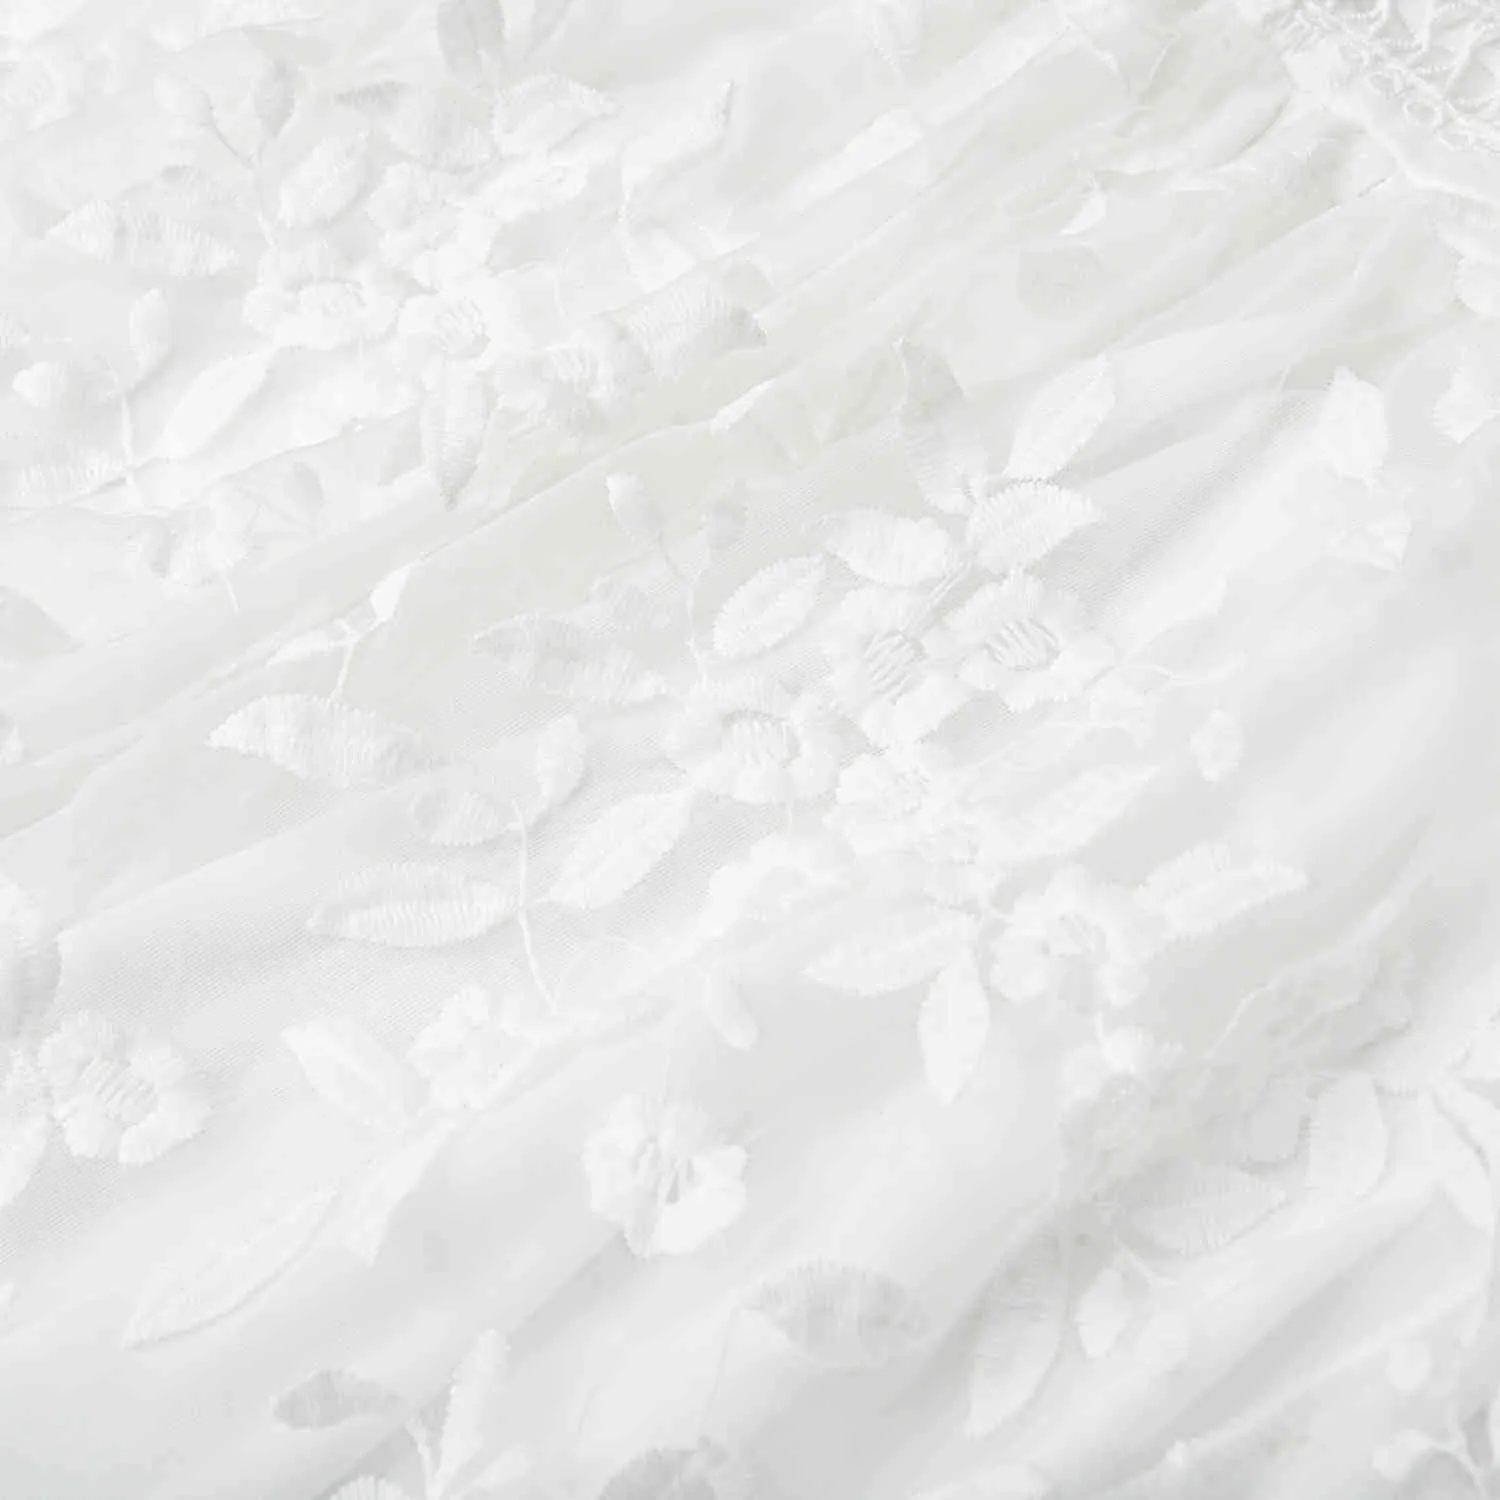 Mode blanc broderie robe florale femmes dos nu Tulle maille court Chic Boho plage Style été Mini Vestido 210427